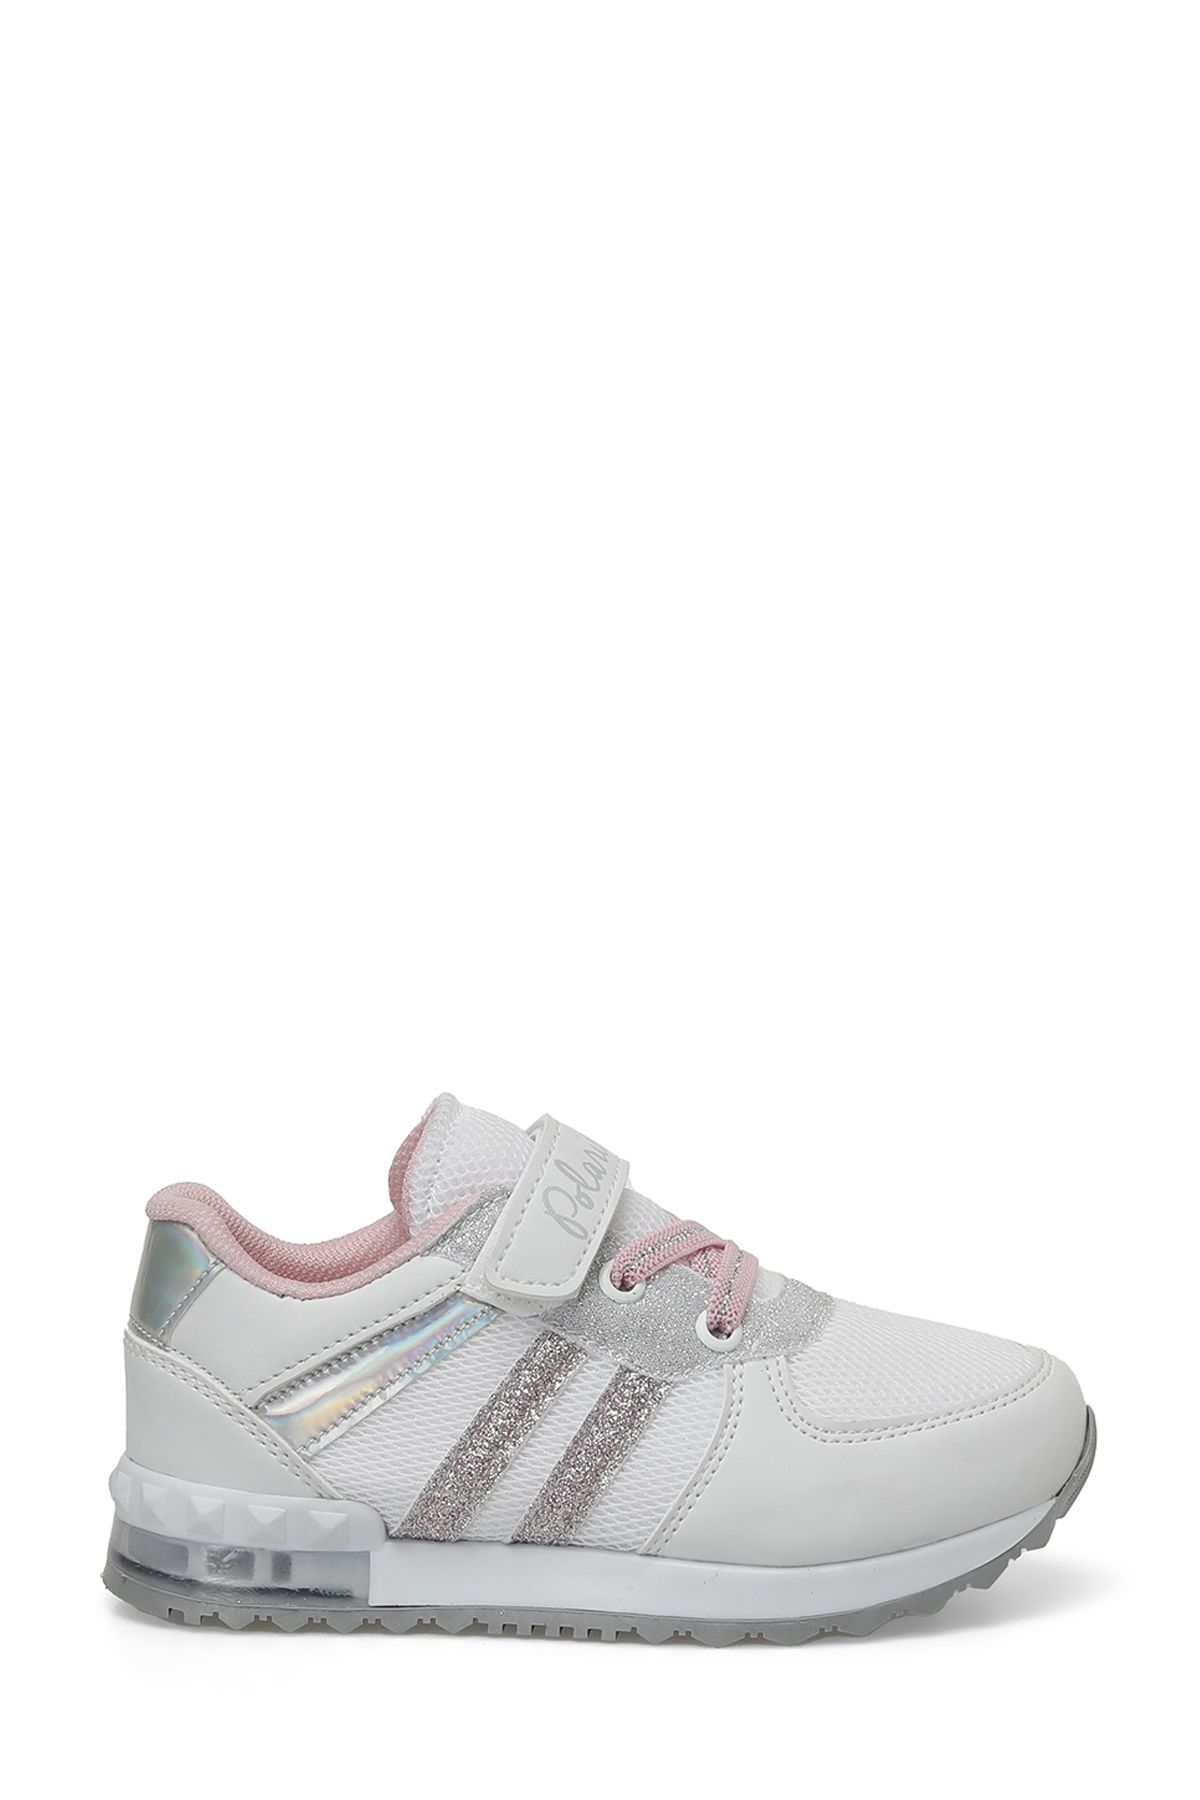 Polaris ANVERS.P4FX Beyaz Kız Çocuk Spor Ayakkabı